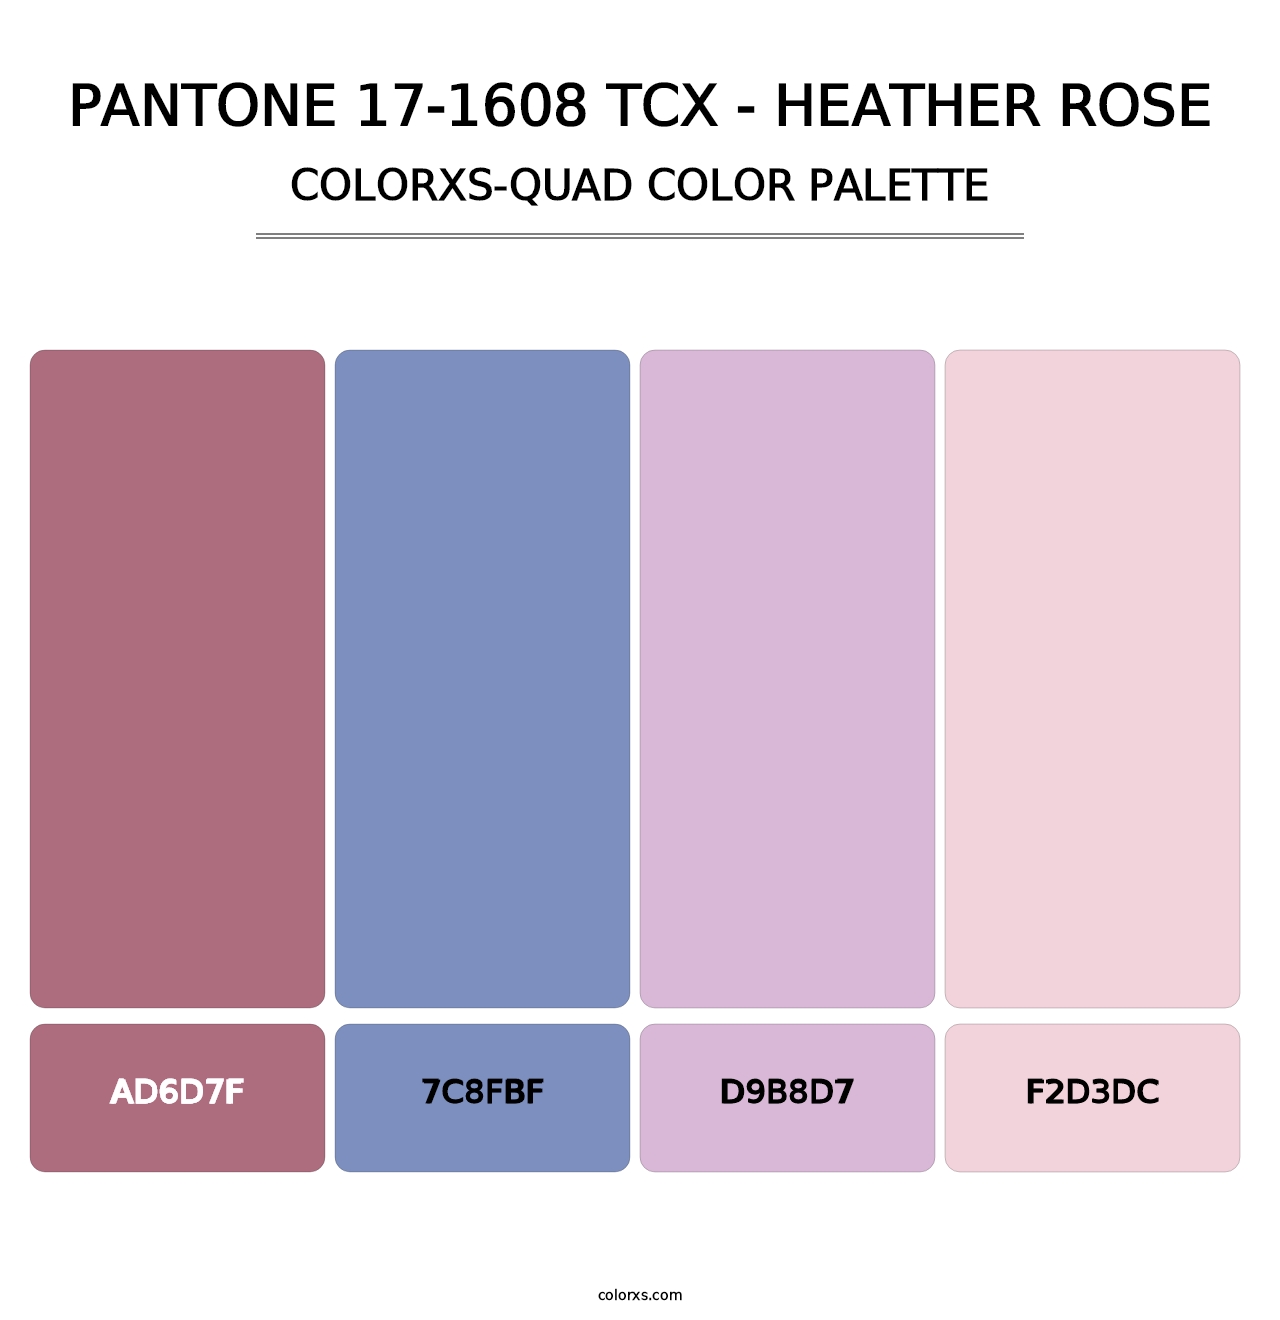 PANTONE 17-1608 TCX - Heather Rose - Colorxs Quad Palette